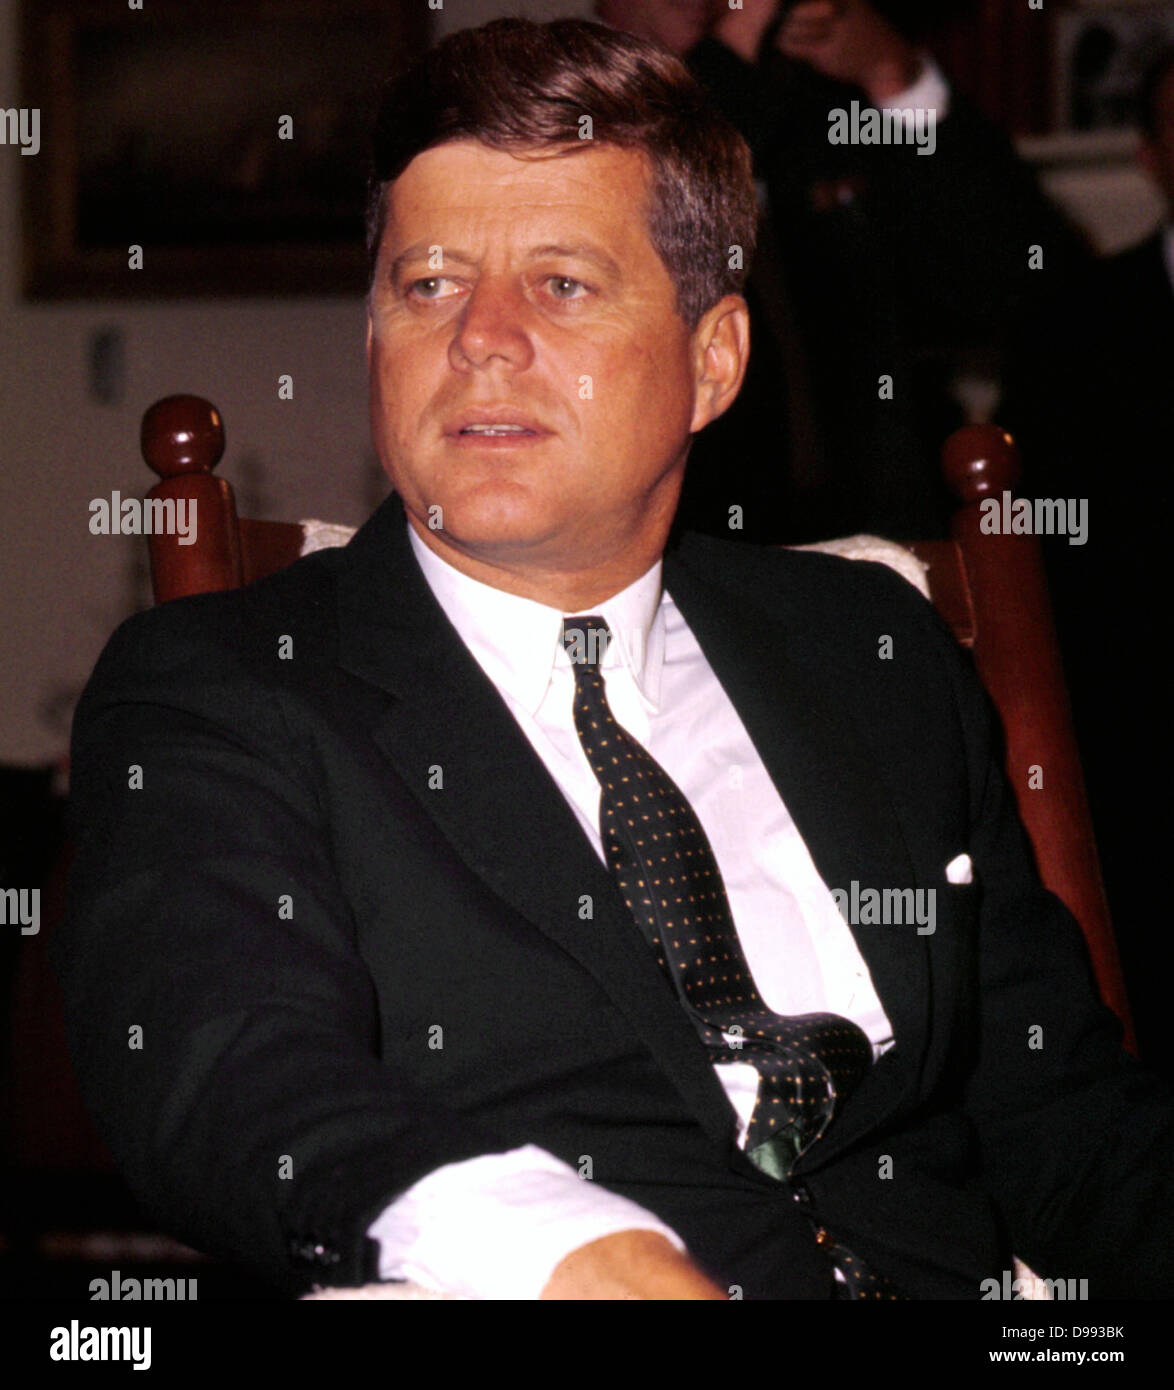 John Fitzgerald Kennedy (29 de mayo de 1917 - 22 de noviembre de 1963), el 35º Presidente de los Estados Unidos, sirviendo desde 1961 hasta su asesinato en 1963. Foto de stock